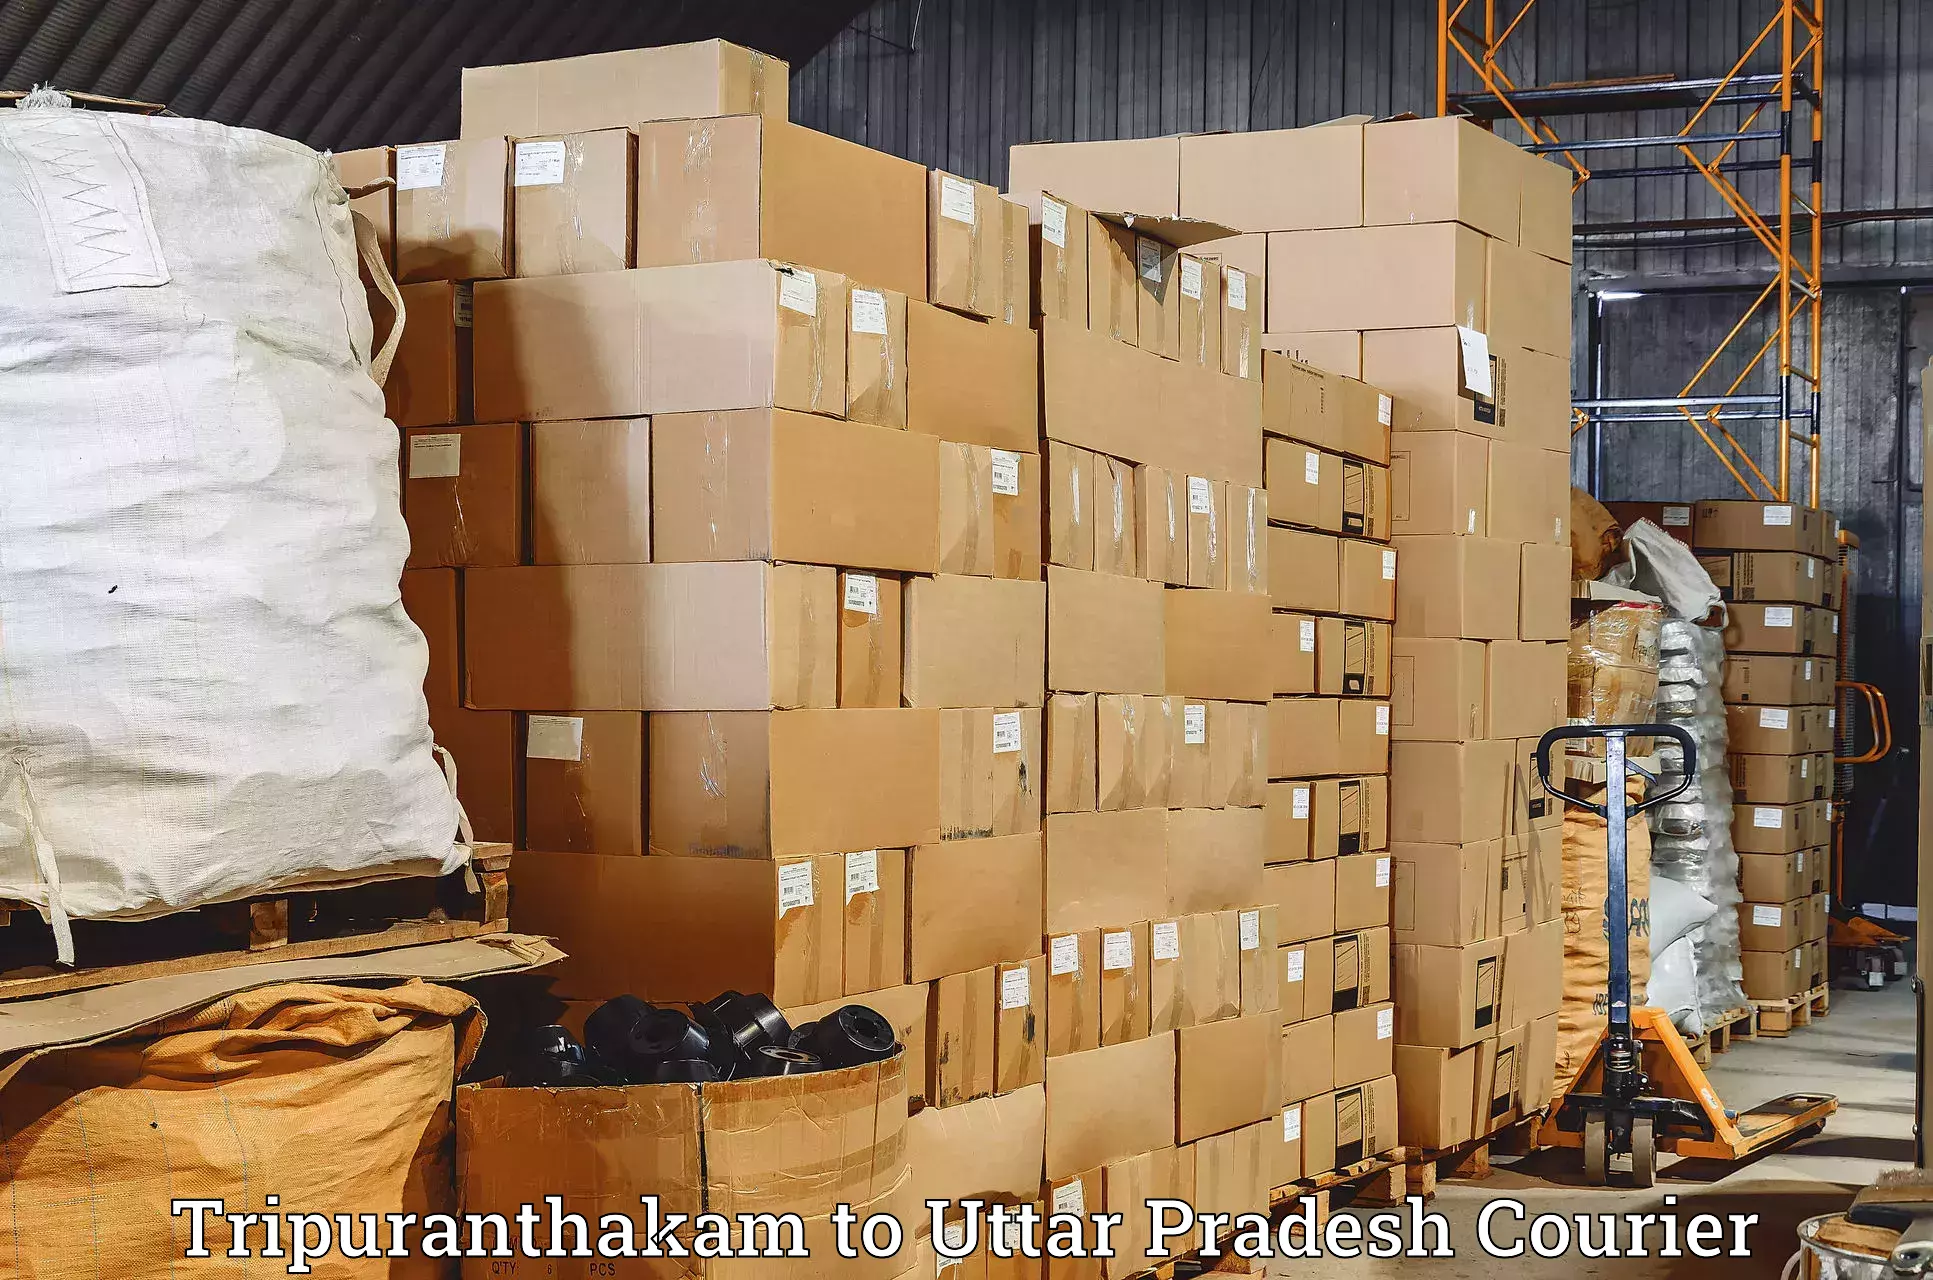 Courier insurance Tripuranthakam to Uttar Pradesh